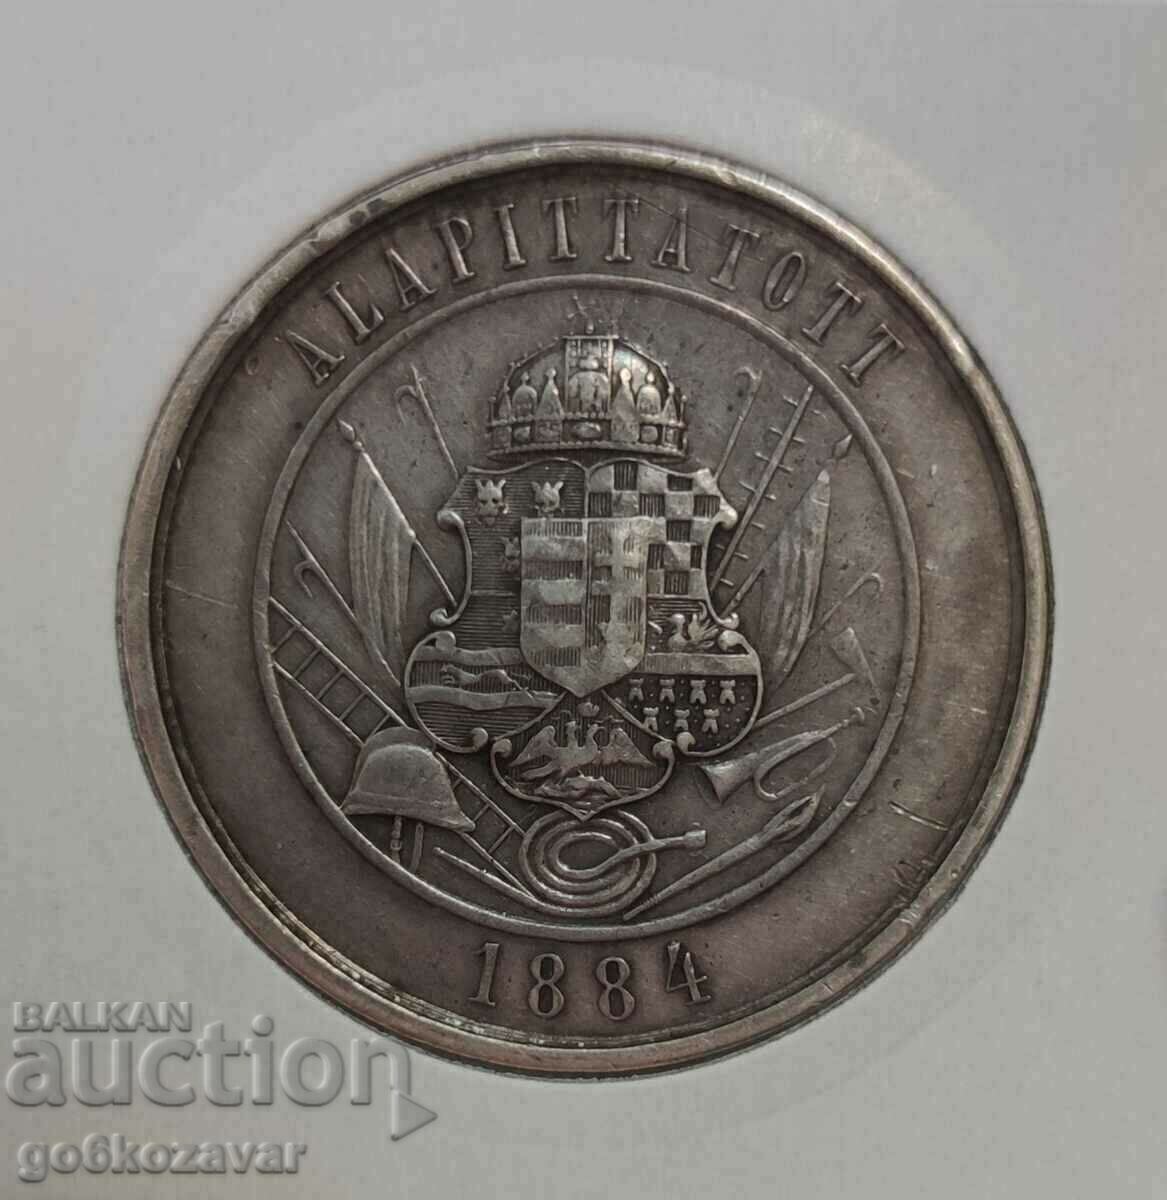 Ουγγαρία μεγάλο ασημένιο μετάλλιο 19ος αιώνας R R